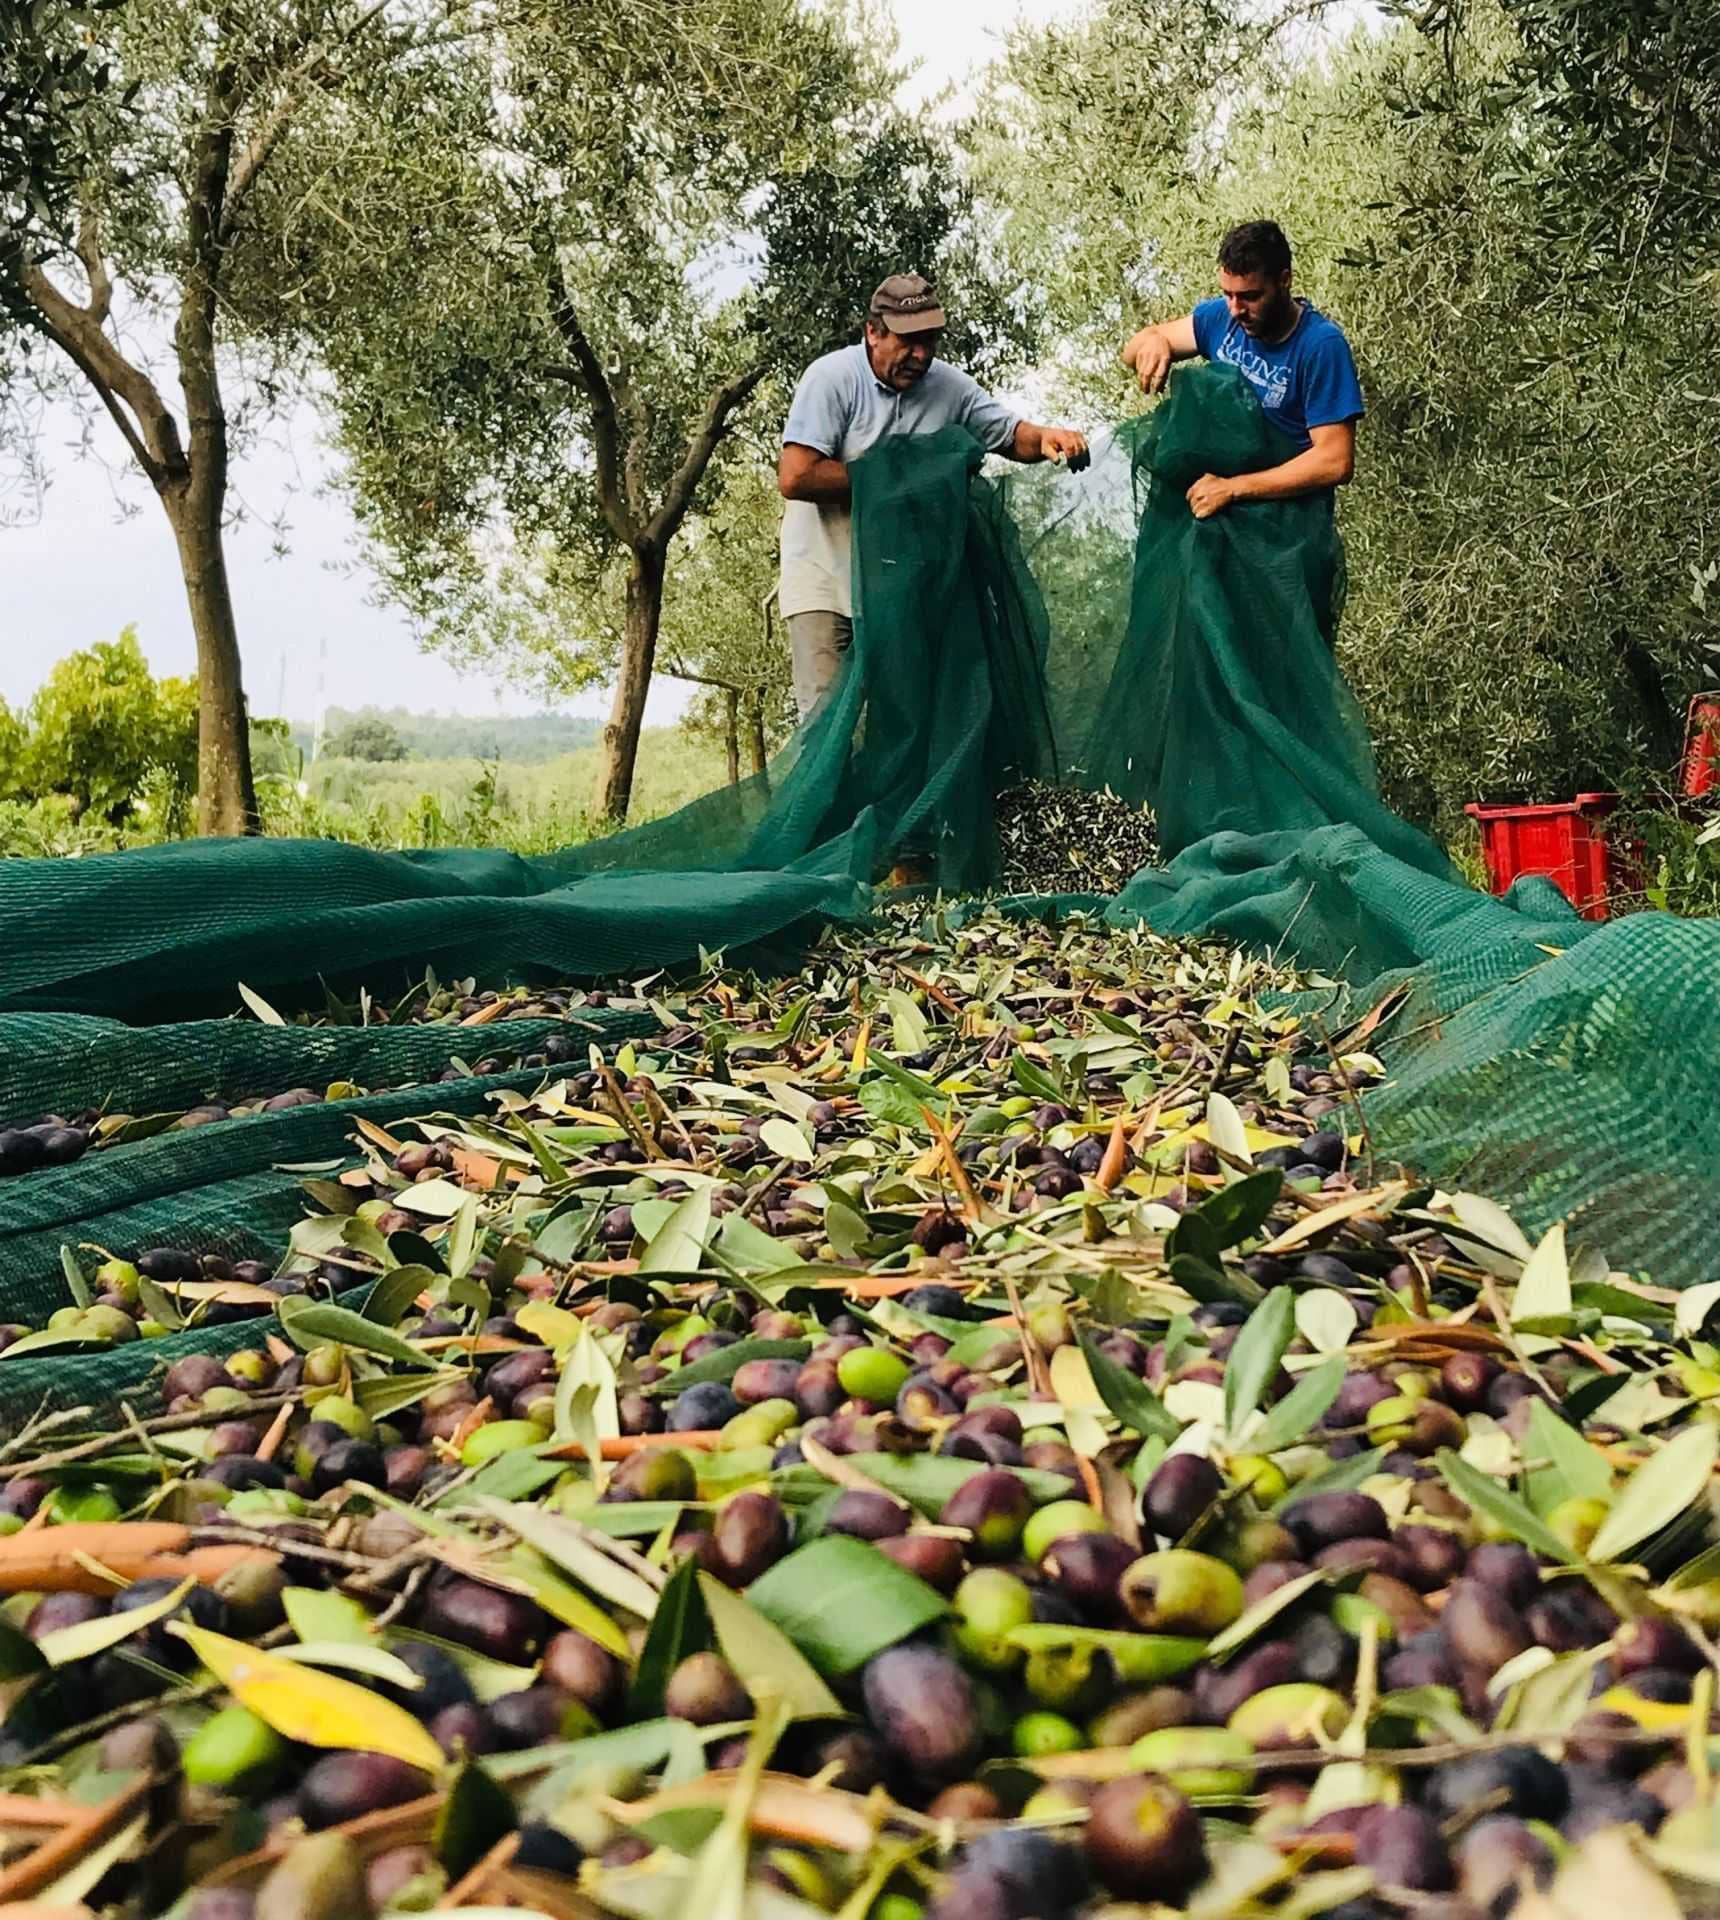 europa-die-besten-olivenölwettbewerbe-kroatische-produzenten-feiern-87-siege-bei-weltweiten-olivenolwettbewerben